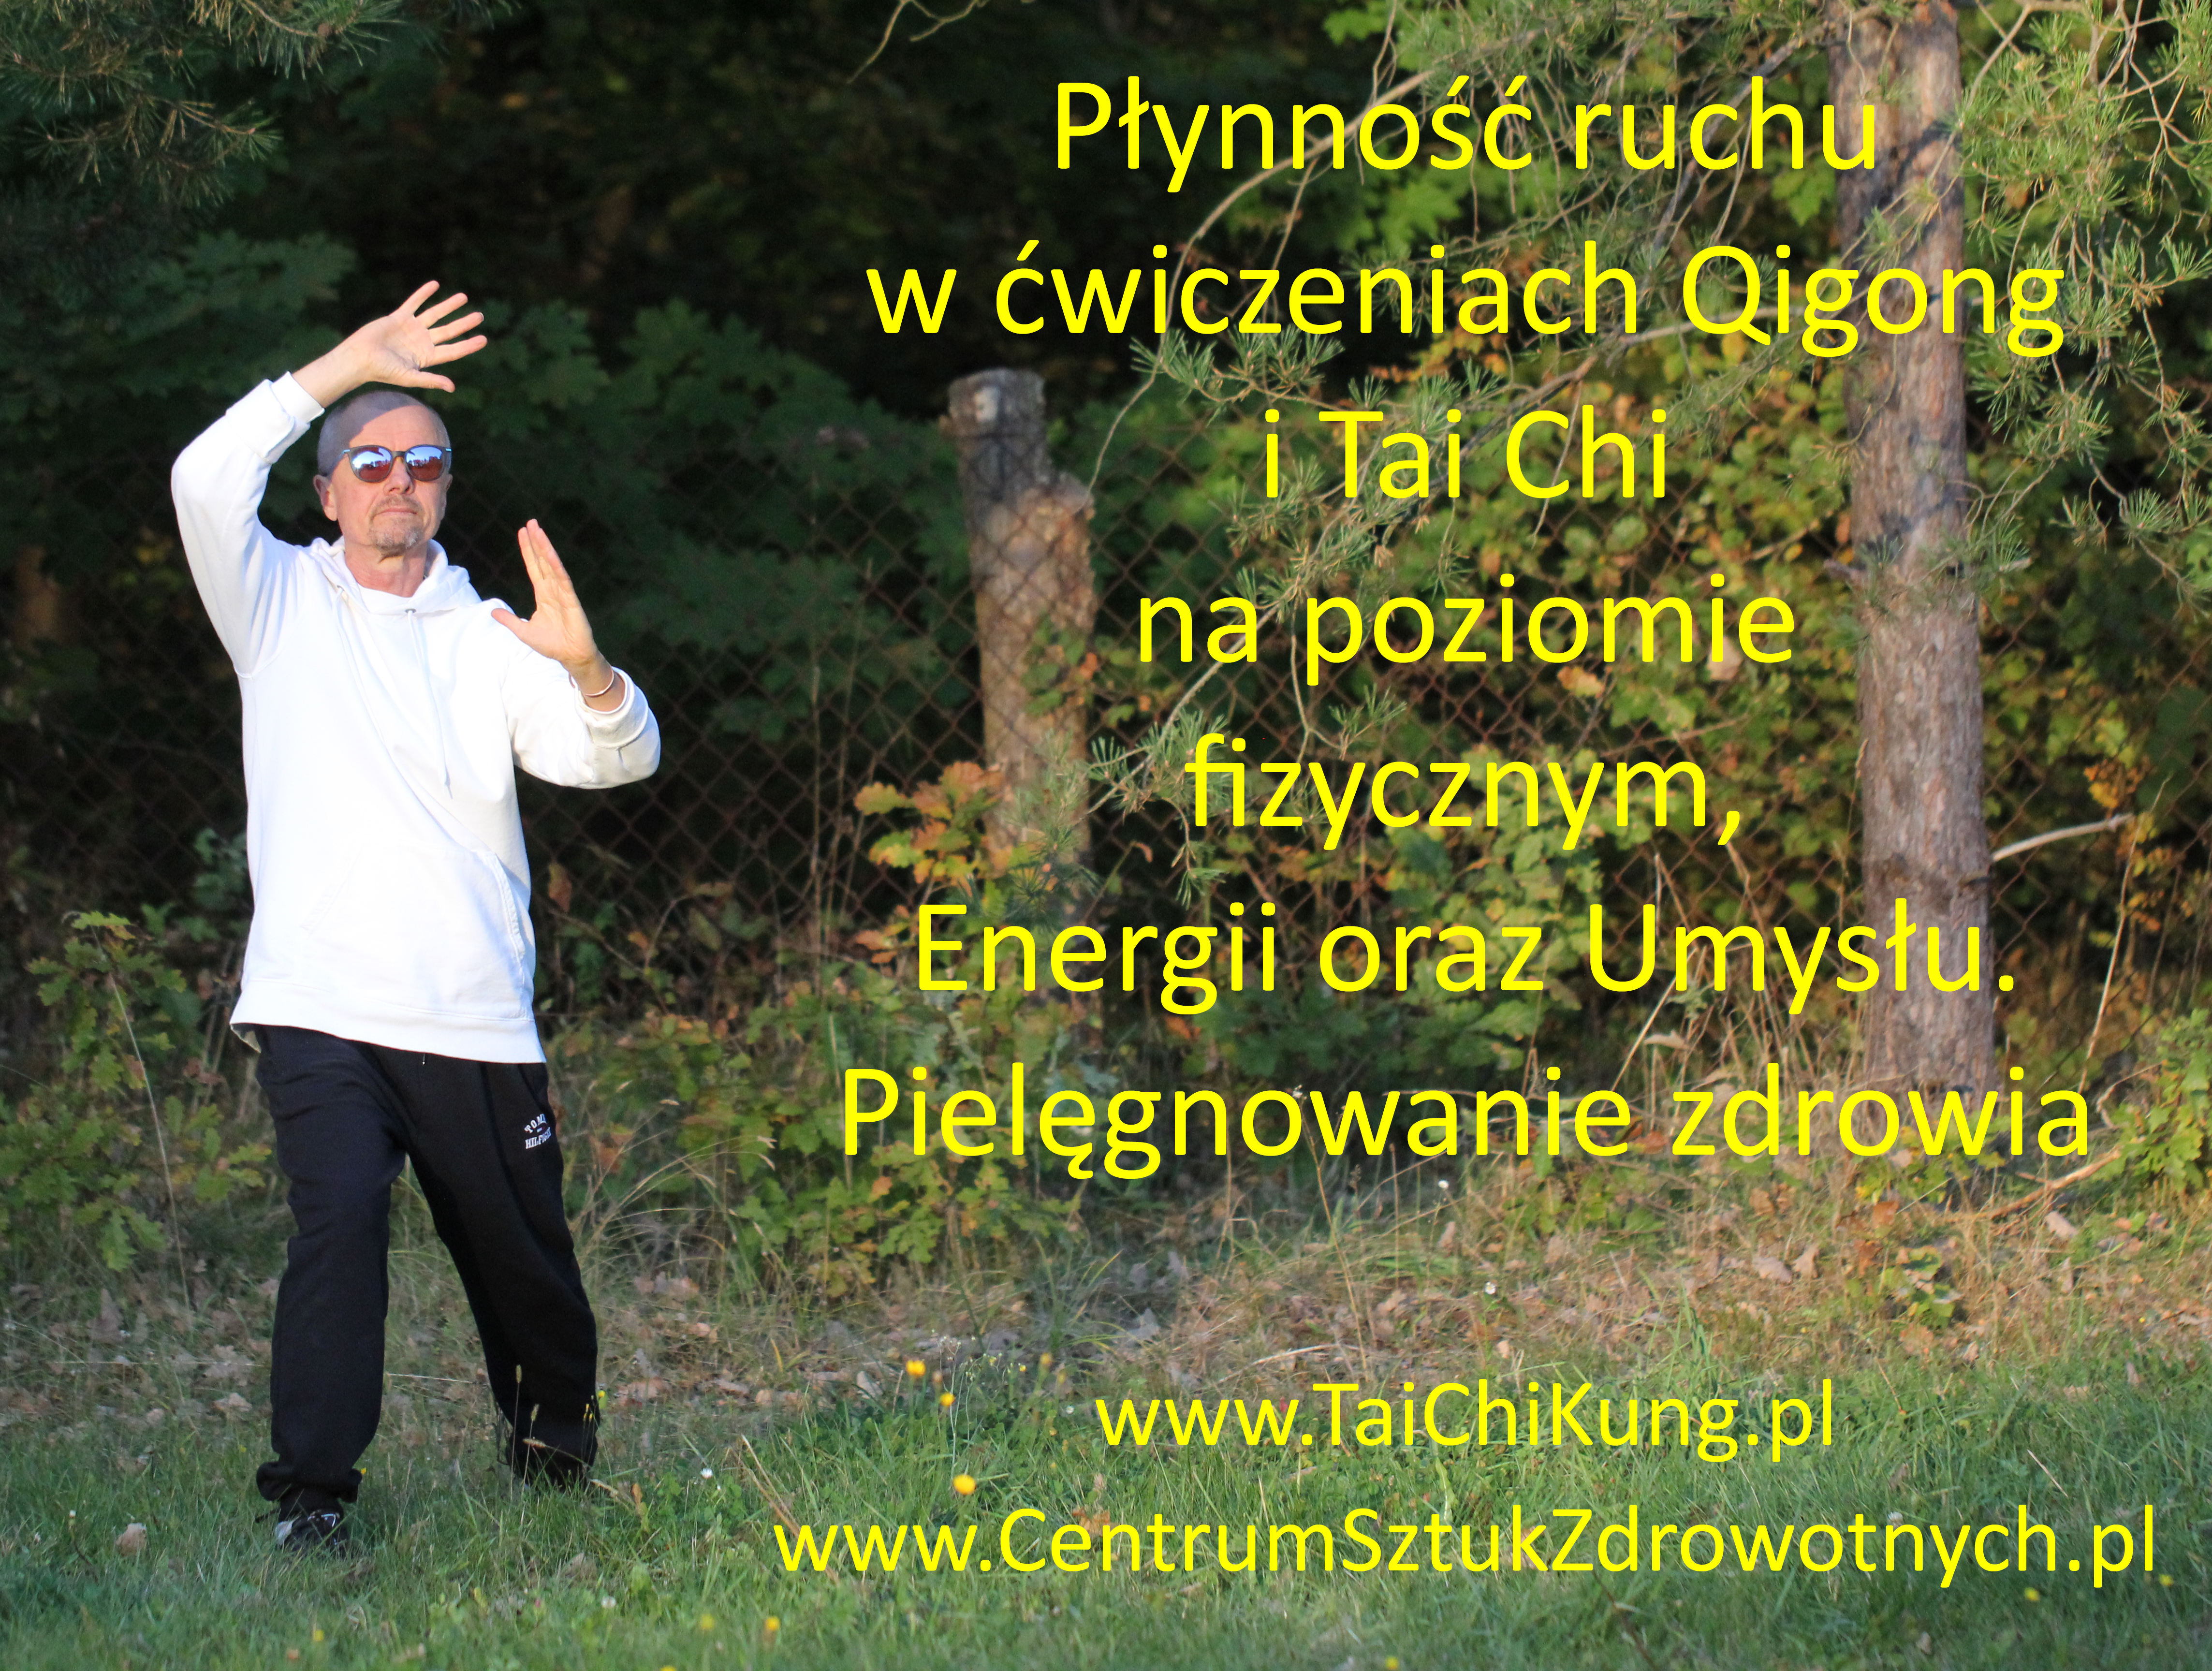 Chi Kung, Tai Chi, Qigong, Warszawa - Płynność ruchu w ćwiczeniach Qigong i Taichi IMG_0965_MEM.jpg